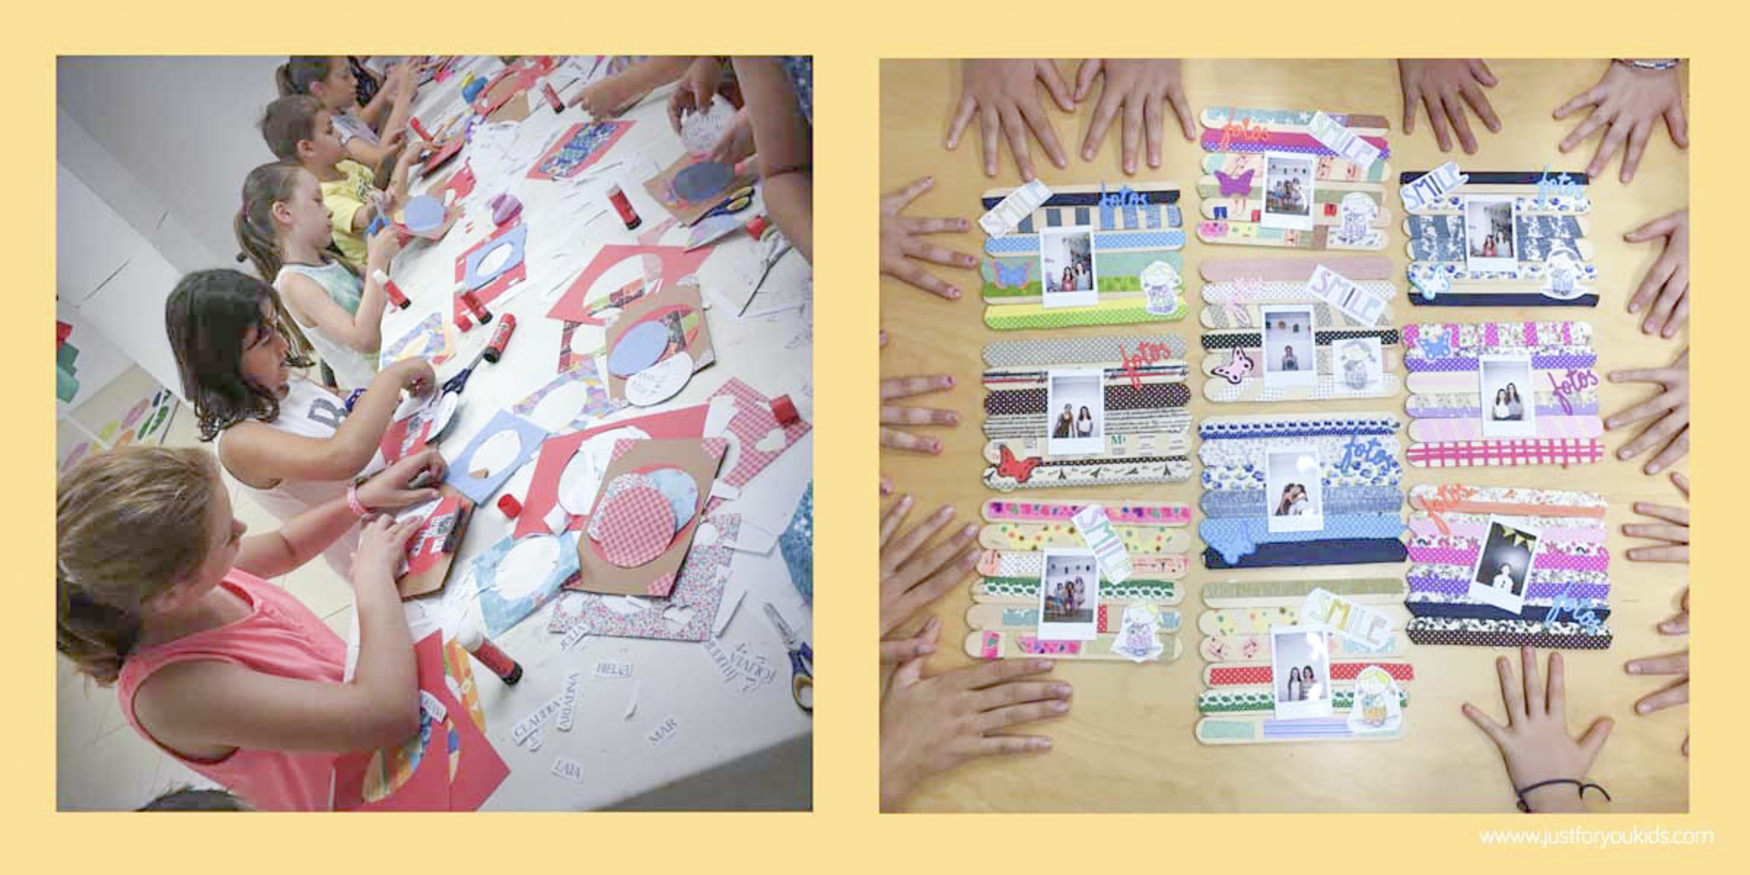 Casal de verano infantil creativo Barcelona 2016 - Niños, manualidades, actividades infantiles Barcelona